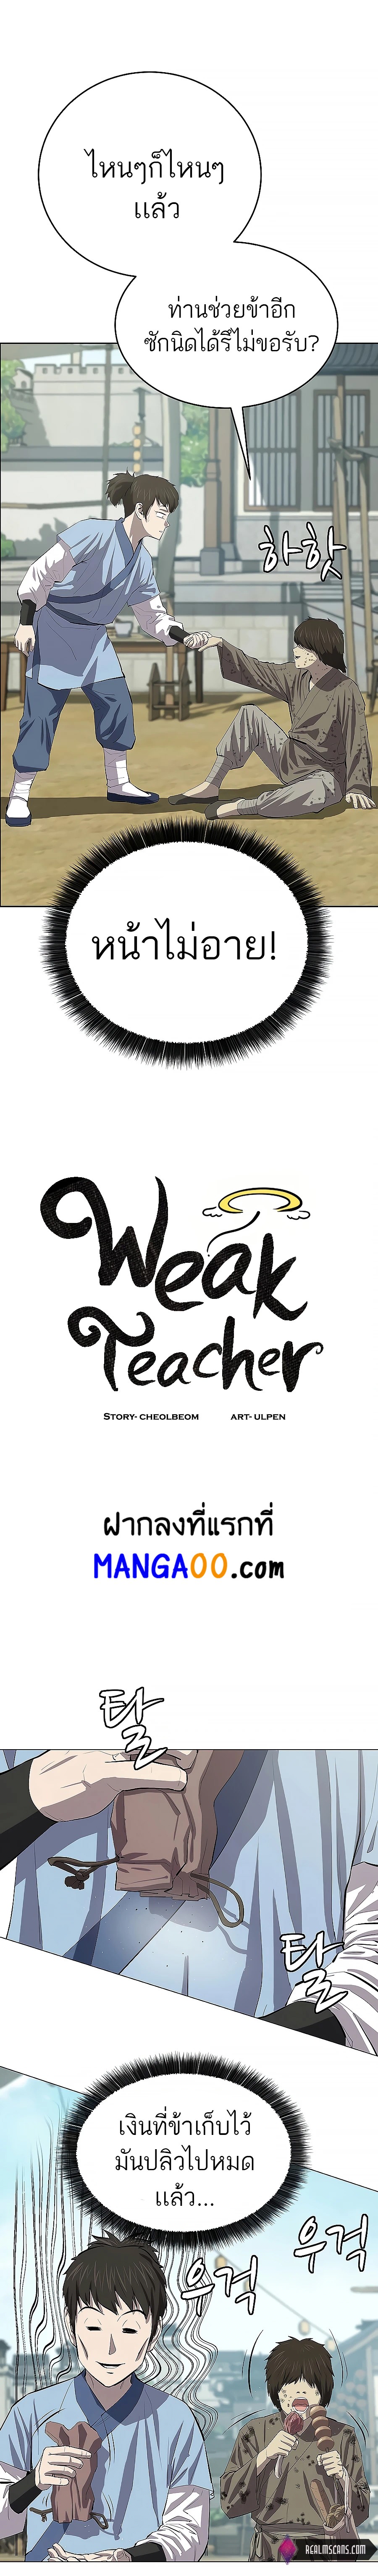 weak-teacher-chapter-78-11.jpg